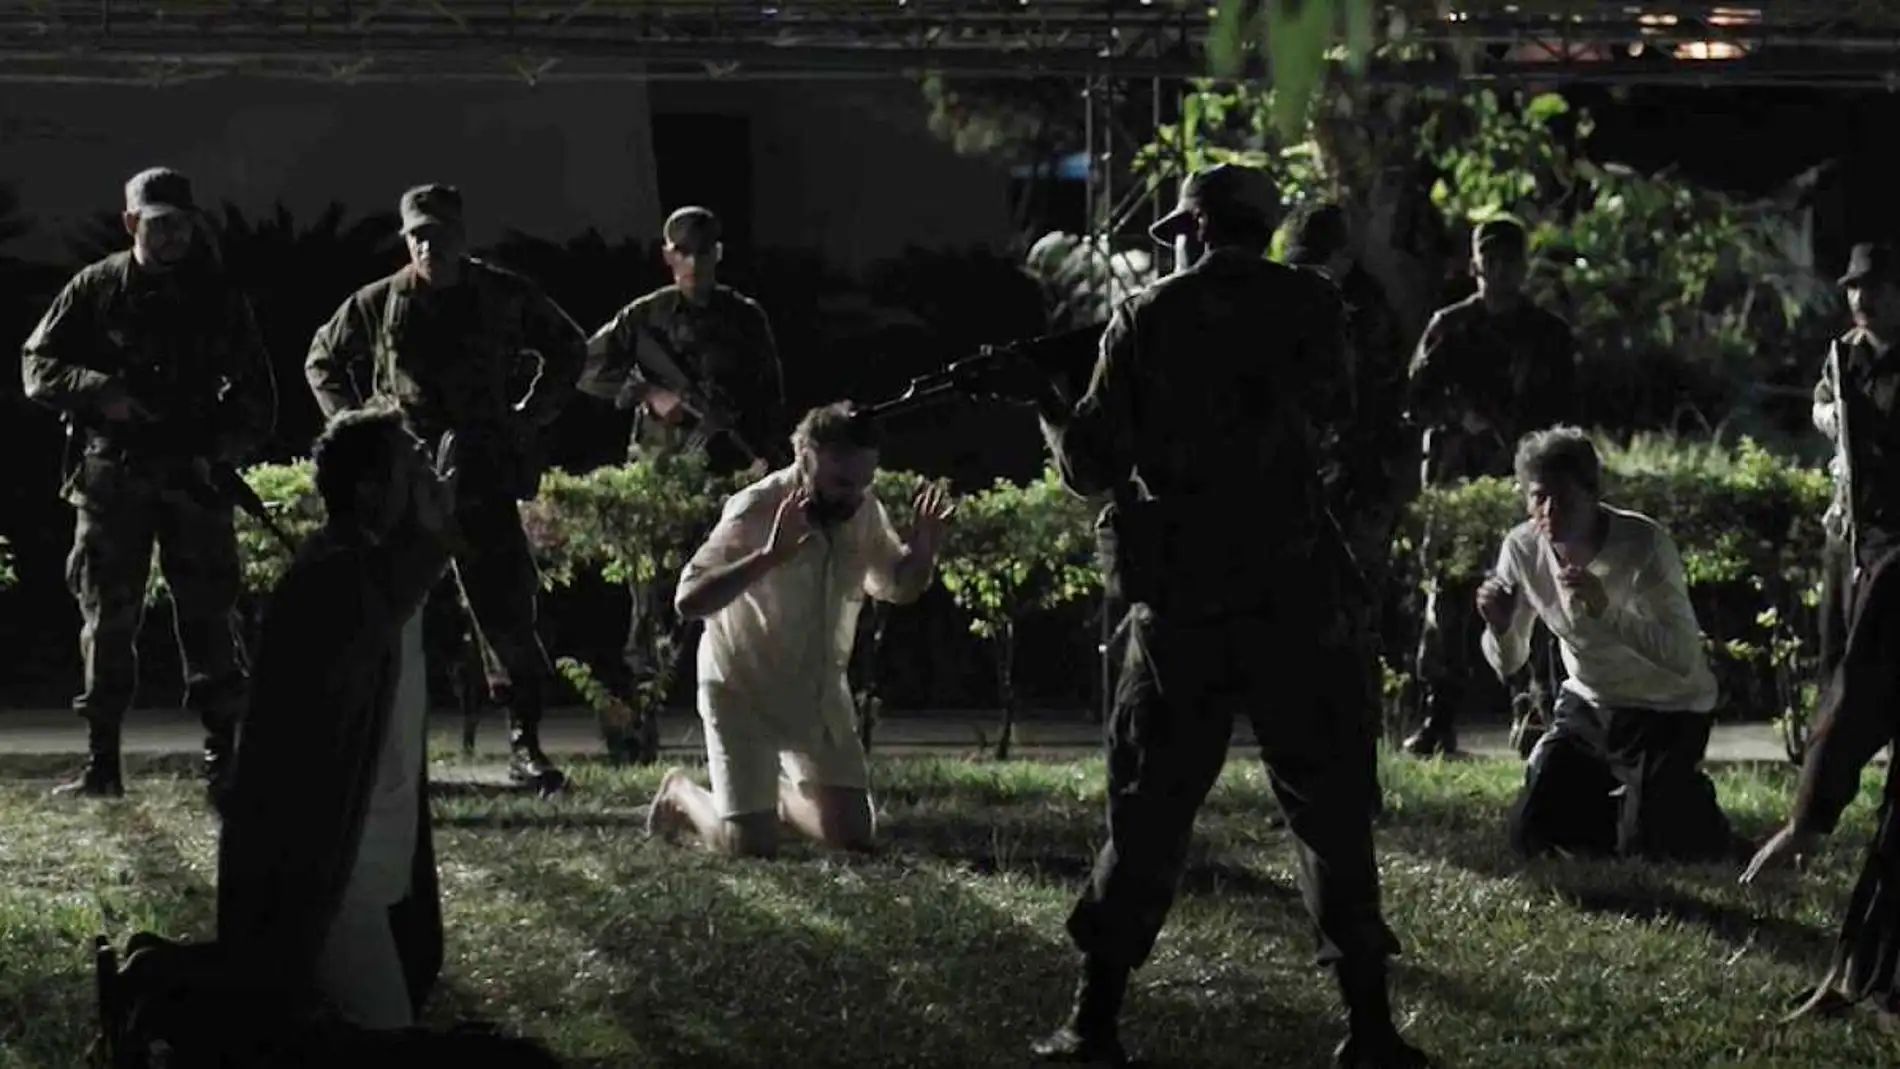 El cineasta Imanol Uribe ha recreado en «Llegaron de noche» la escena del asesinato de los mártires de la Universidad Católica de El Salvador